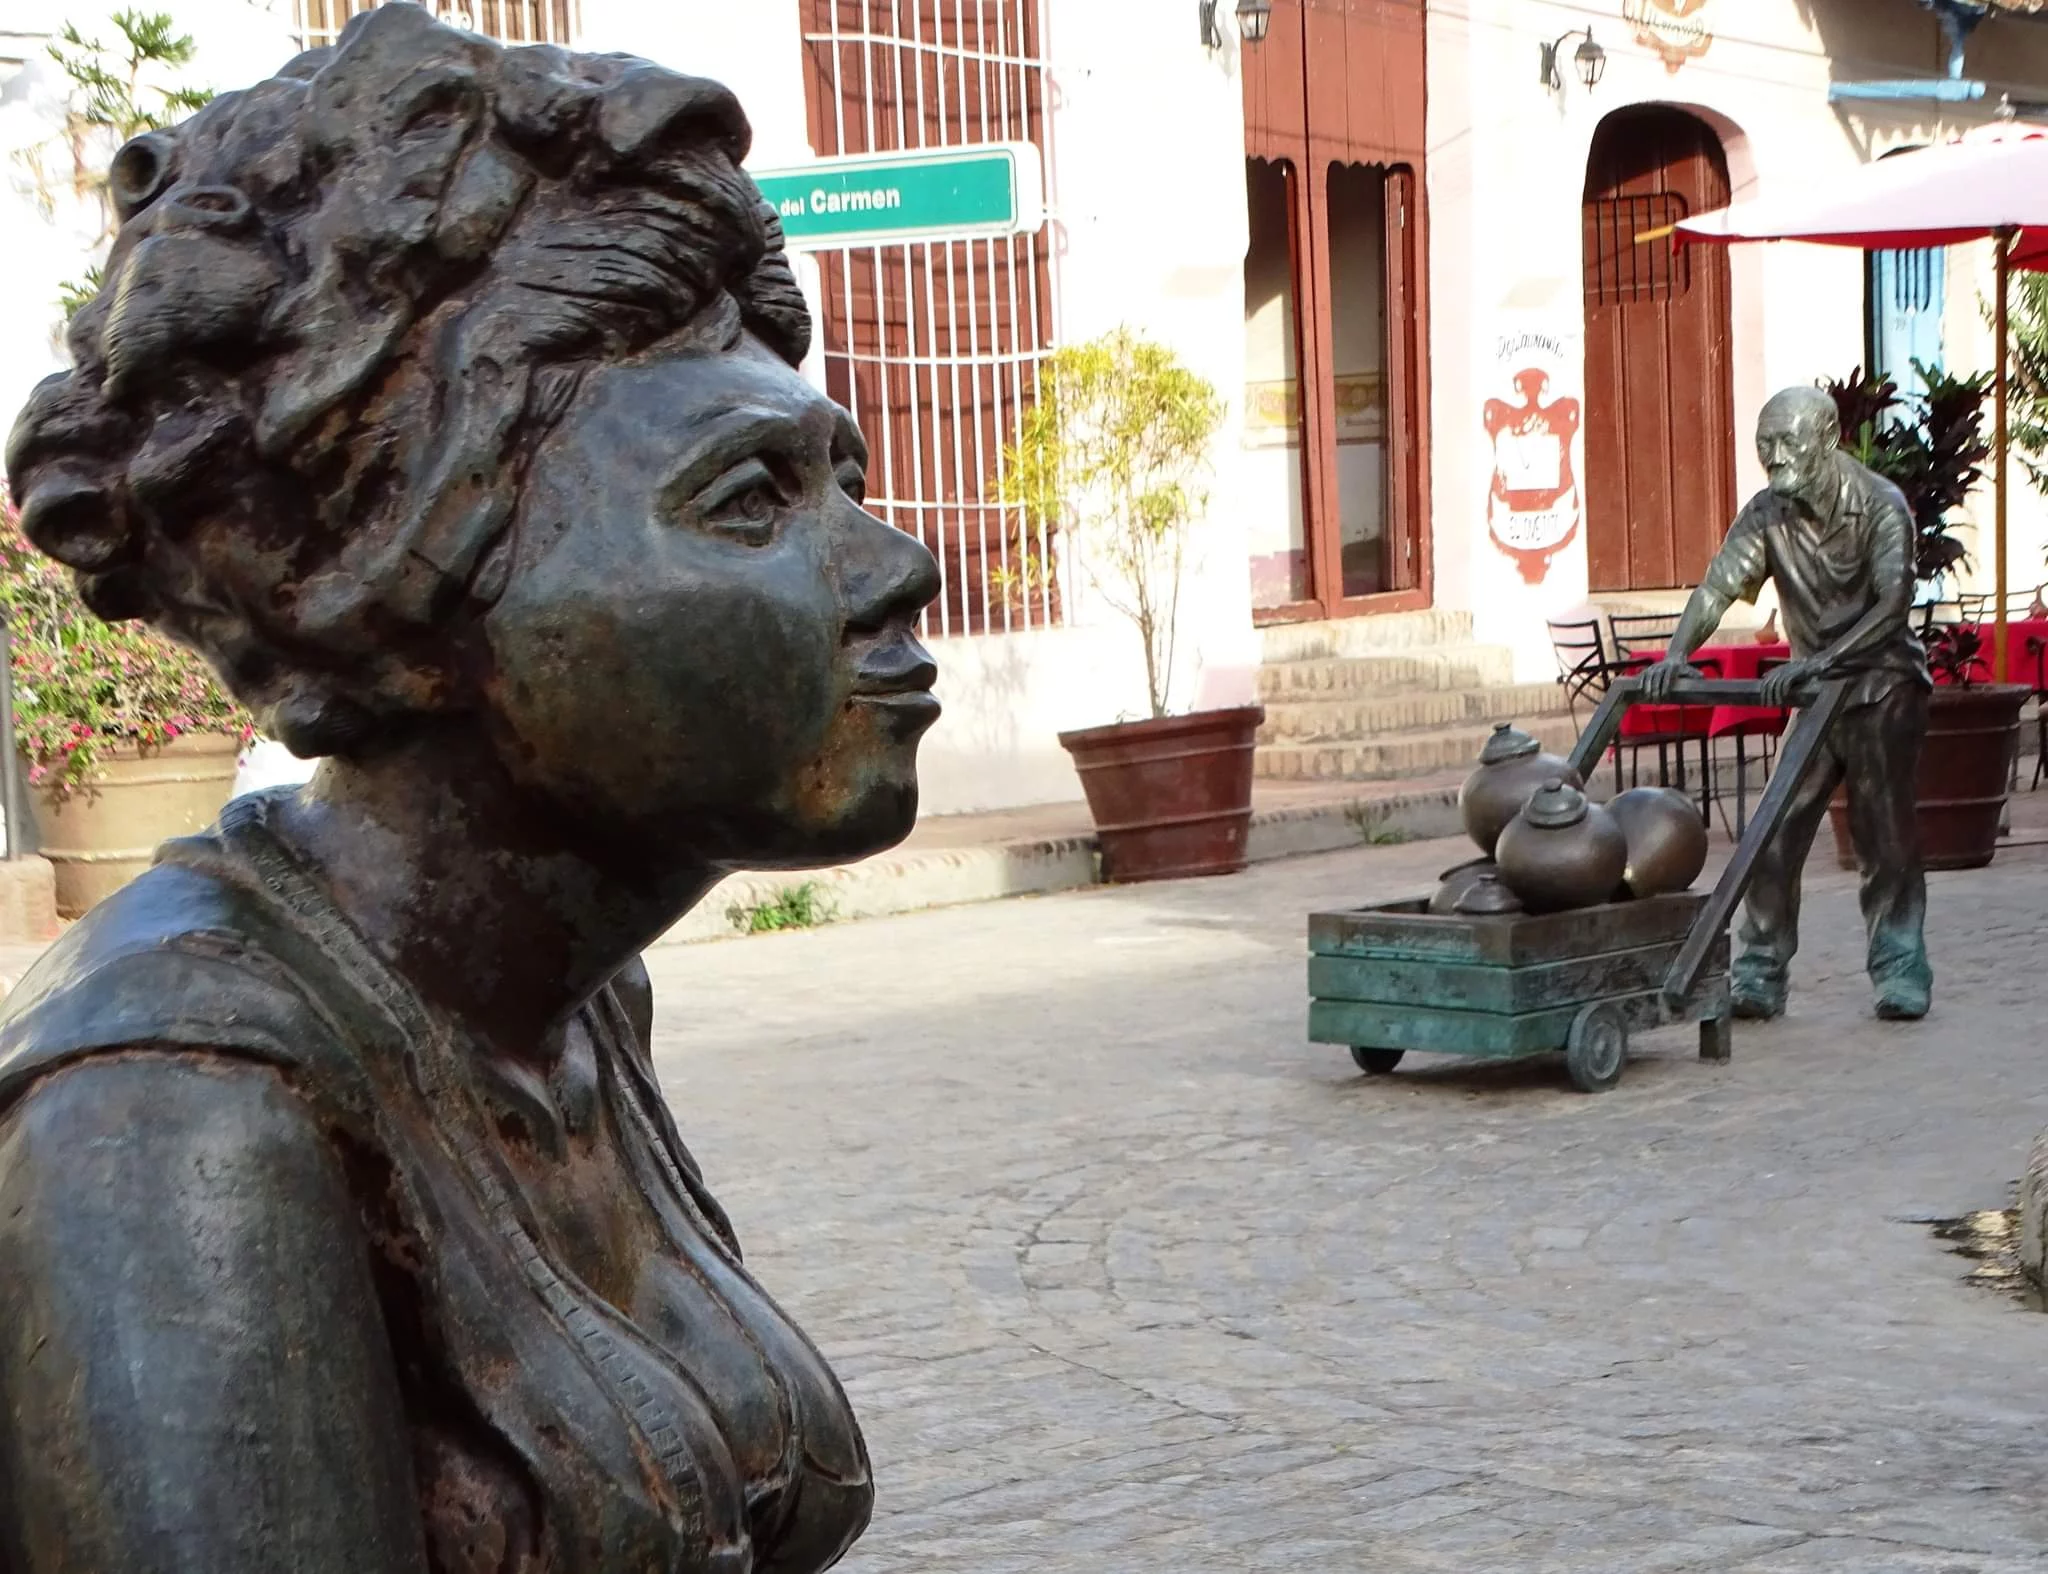 Plaza del Carmen : site emblématique plein de traditions, de culture et d'identité cubaine